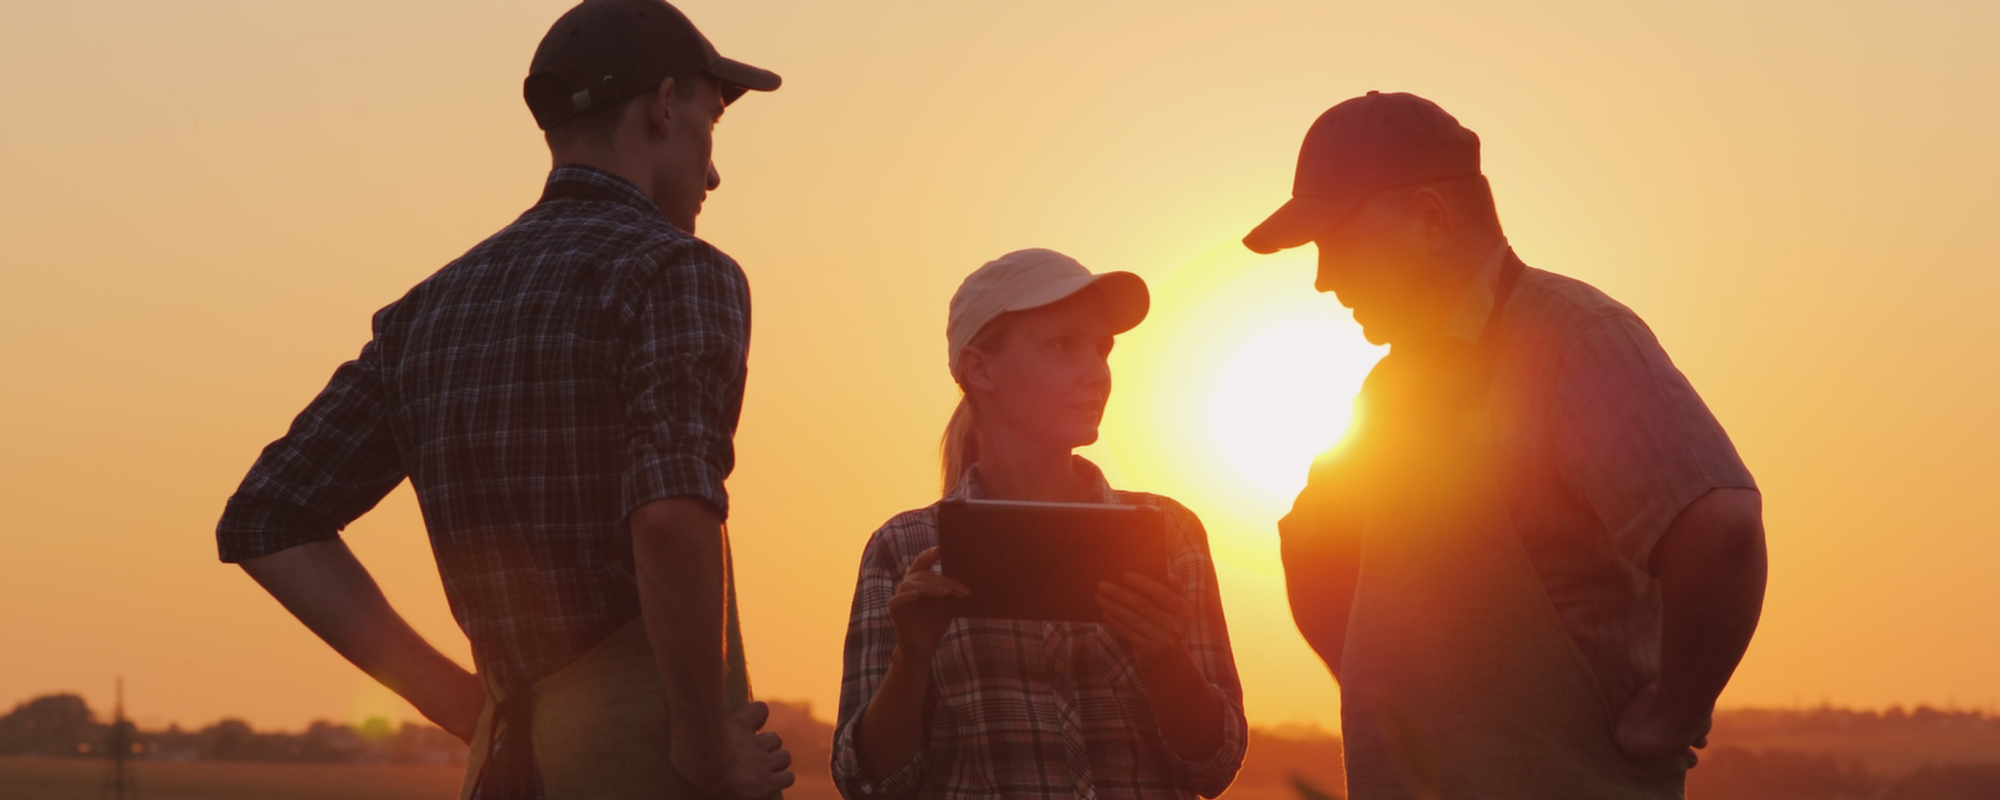 3 agriculteurs parlant dans le champ au coucher du soleil